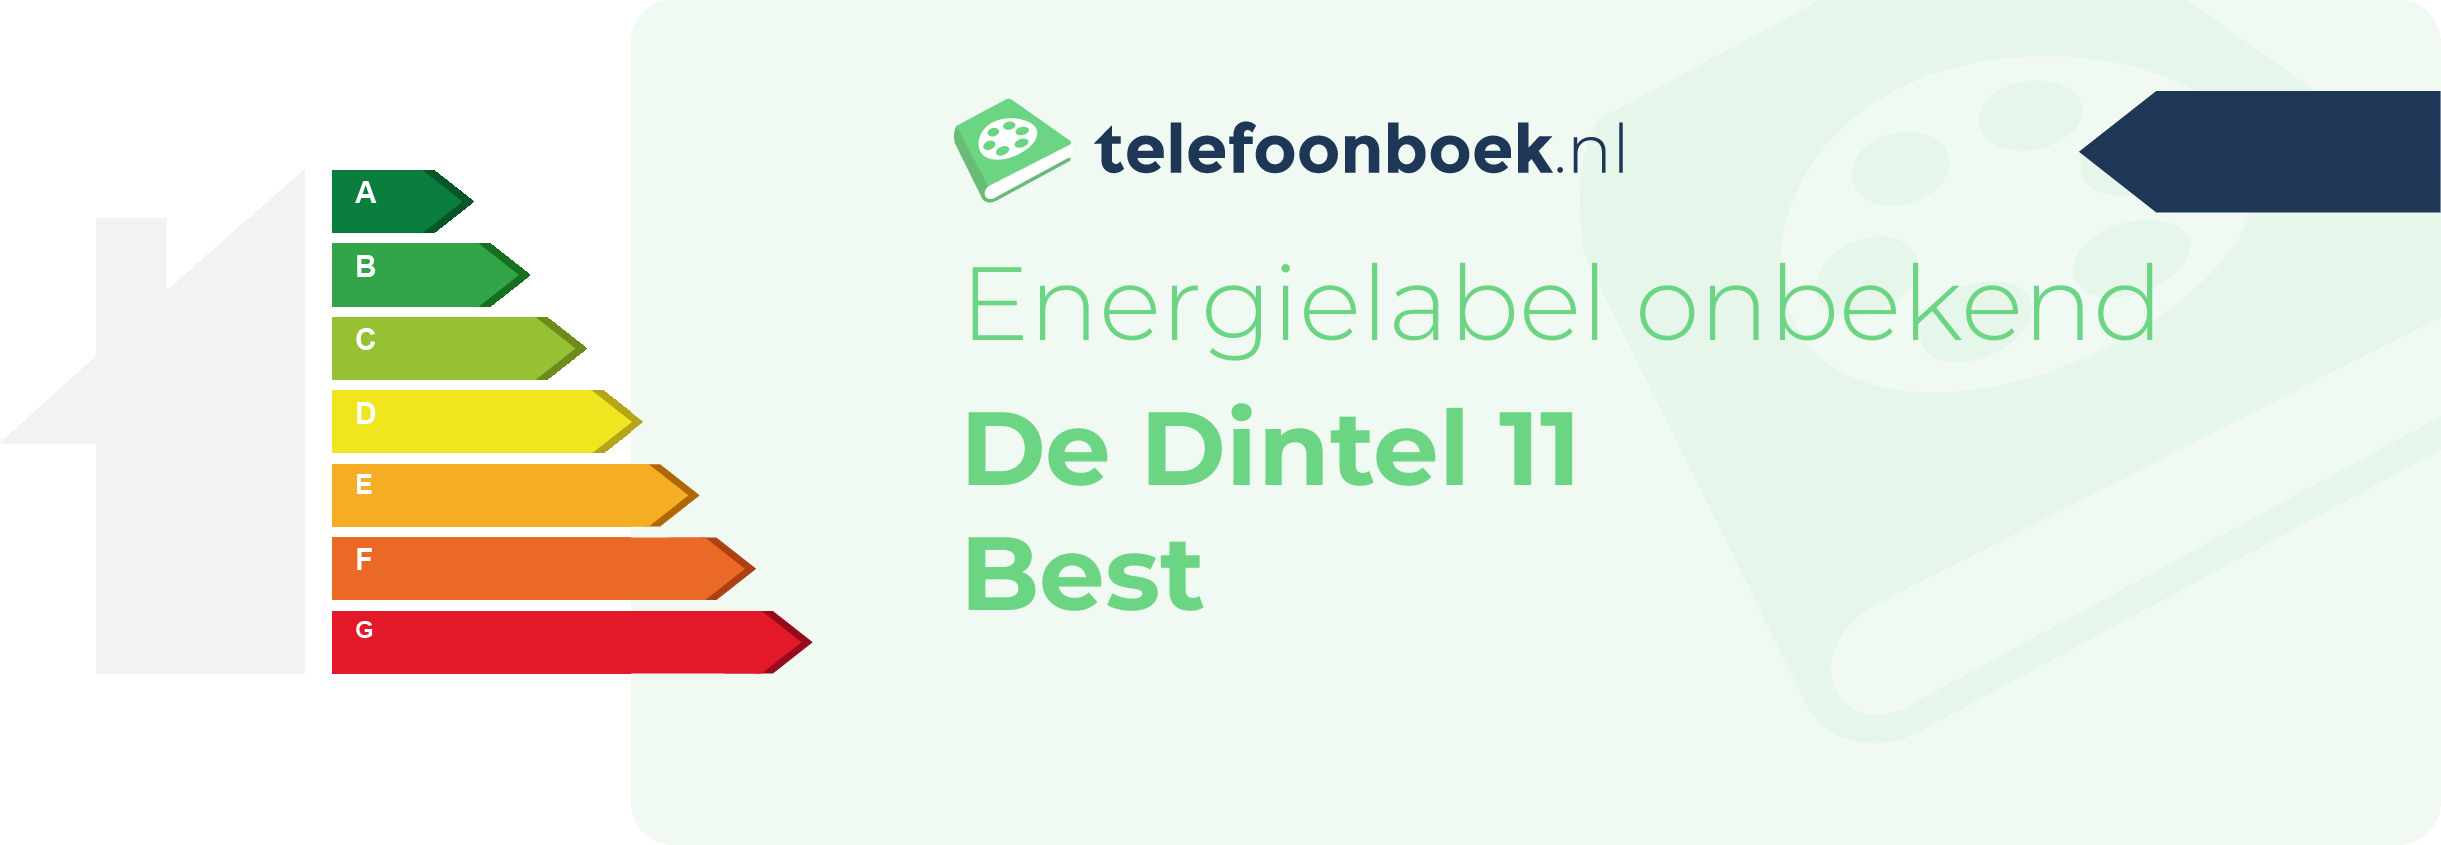 Energielabel De Dintel 11 Best